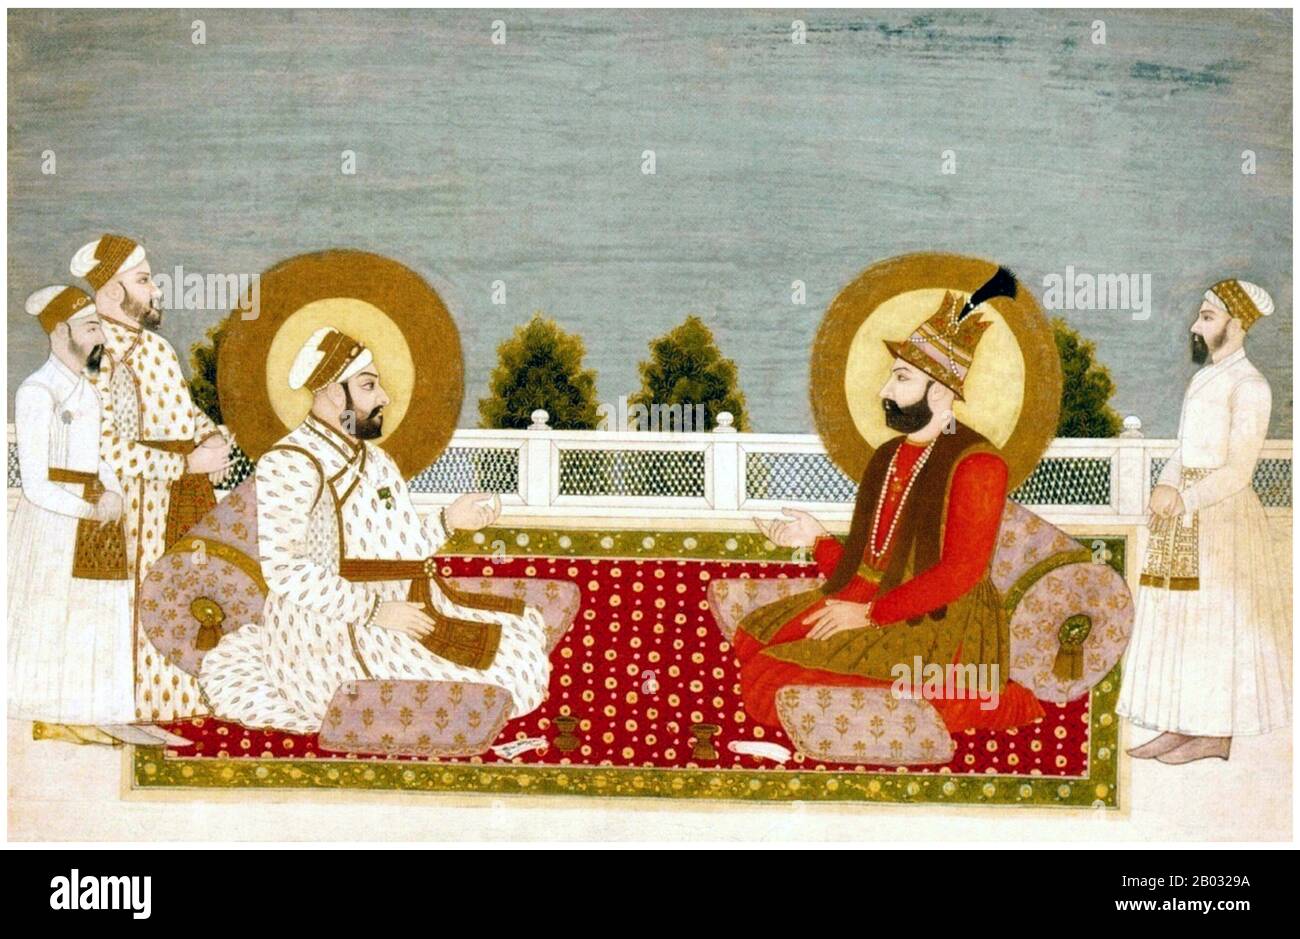 Nasir-ud-Din Muhammad Shah, Nasir-ud-Din Muhammad Shah Irkhwaz, Abu Al-Fatah Nasir-ud-Din Roshan Akhtar Muhammad Shah (17. August 1702 - 26. April 1748) war zwischen 1719 und 1748 der 12. Mughal-Kaiser. Nader Shah Afshar oder Nadir Shah, auch Nader Qoli Beg oder Tahmasp Qoli Khan genannt (November, 1688 oder 6. August 1698 - 19. Juni 1747) regierte als Schah von Persien (1736-47) und war einer der mächtigsten Herrschaften der iranischen Geschichte. Stockfoto